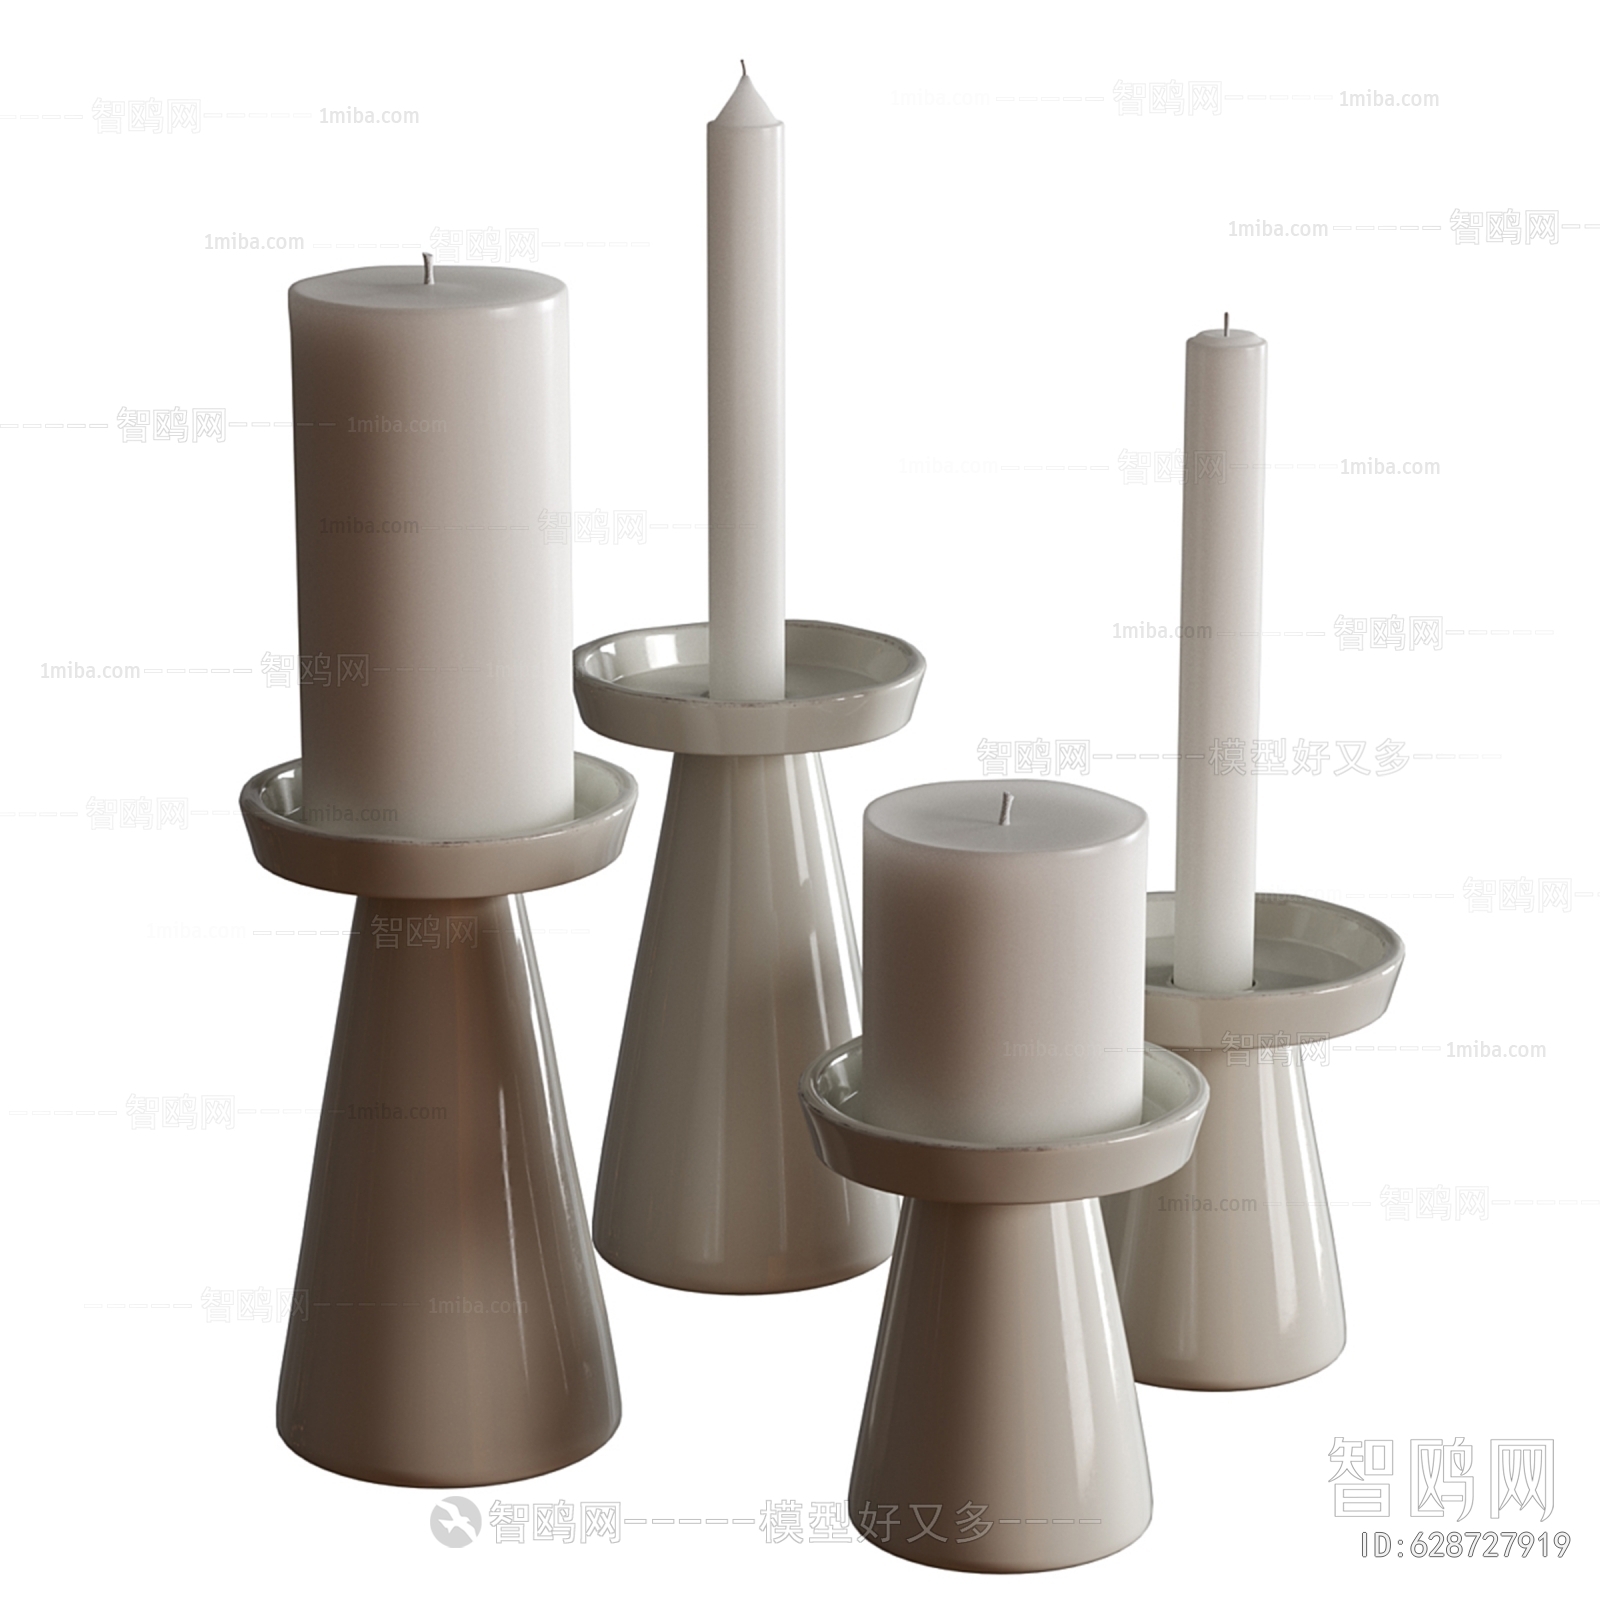 Modern Candles/Candlesticks